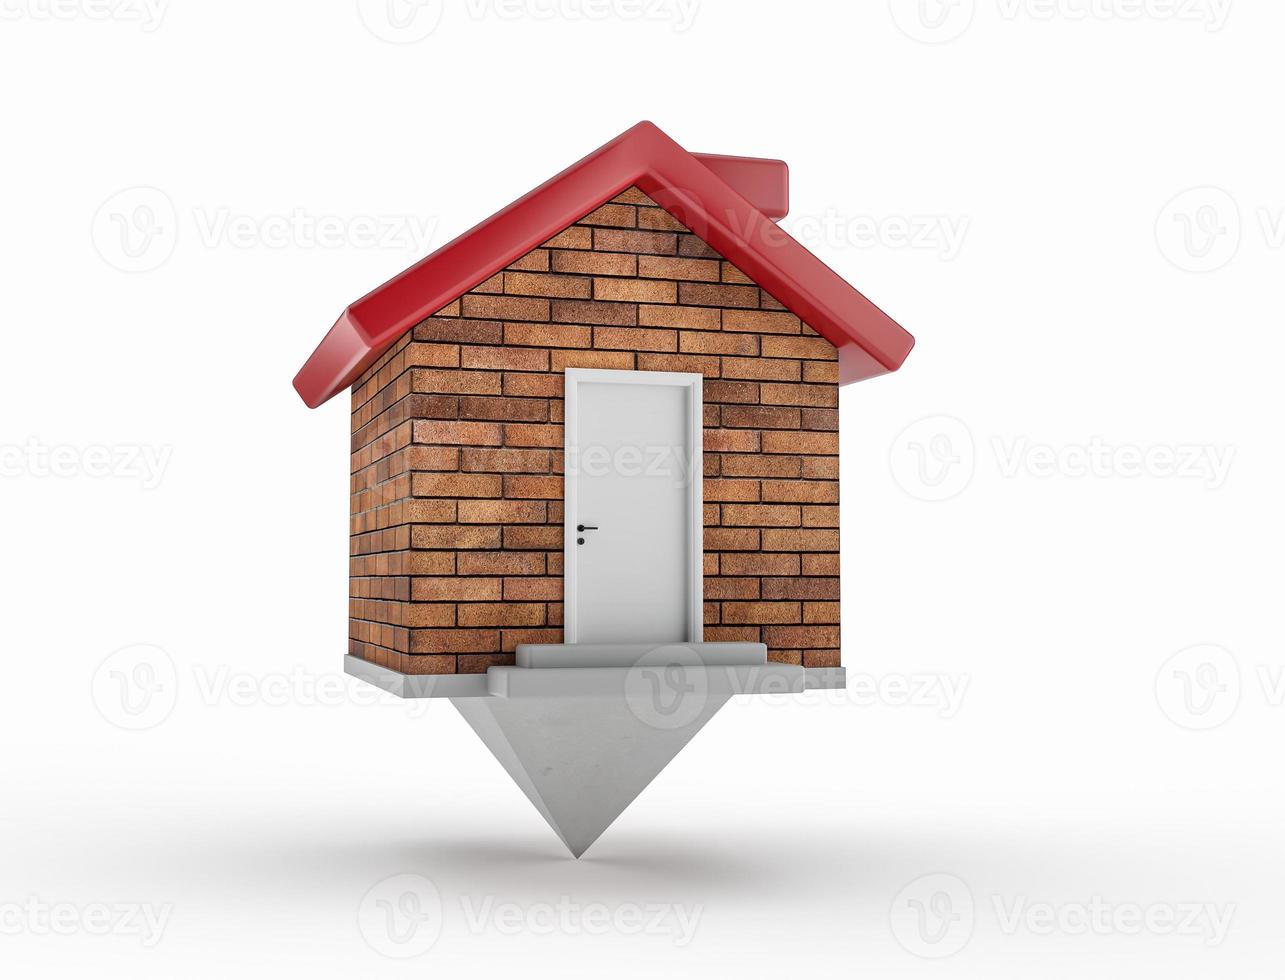 casa mapa puntero ladrillos pared rojo techo chimenea blanco puertas gris pasos 3d ilustración foto